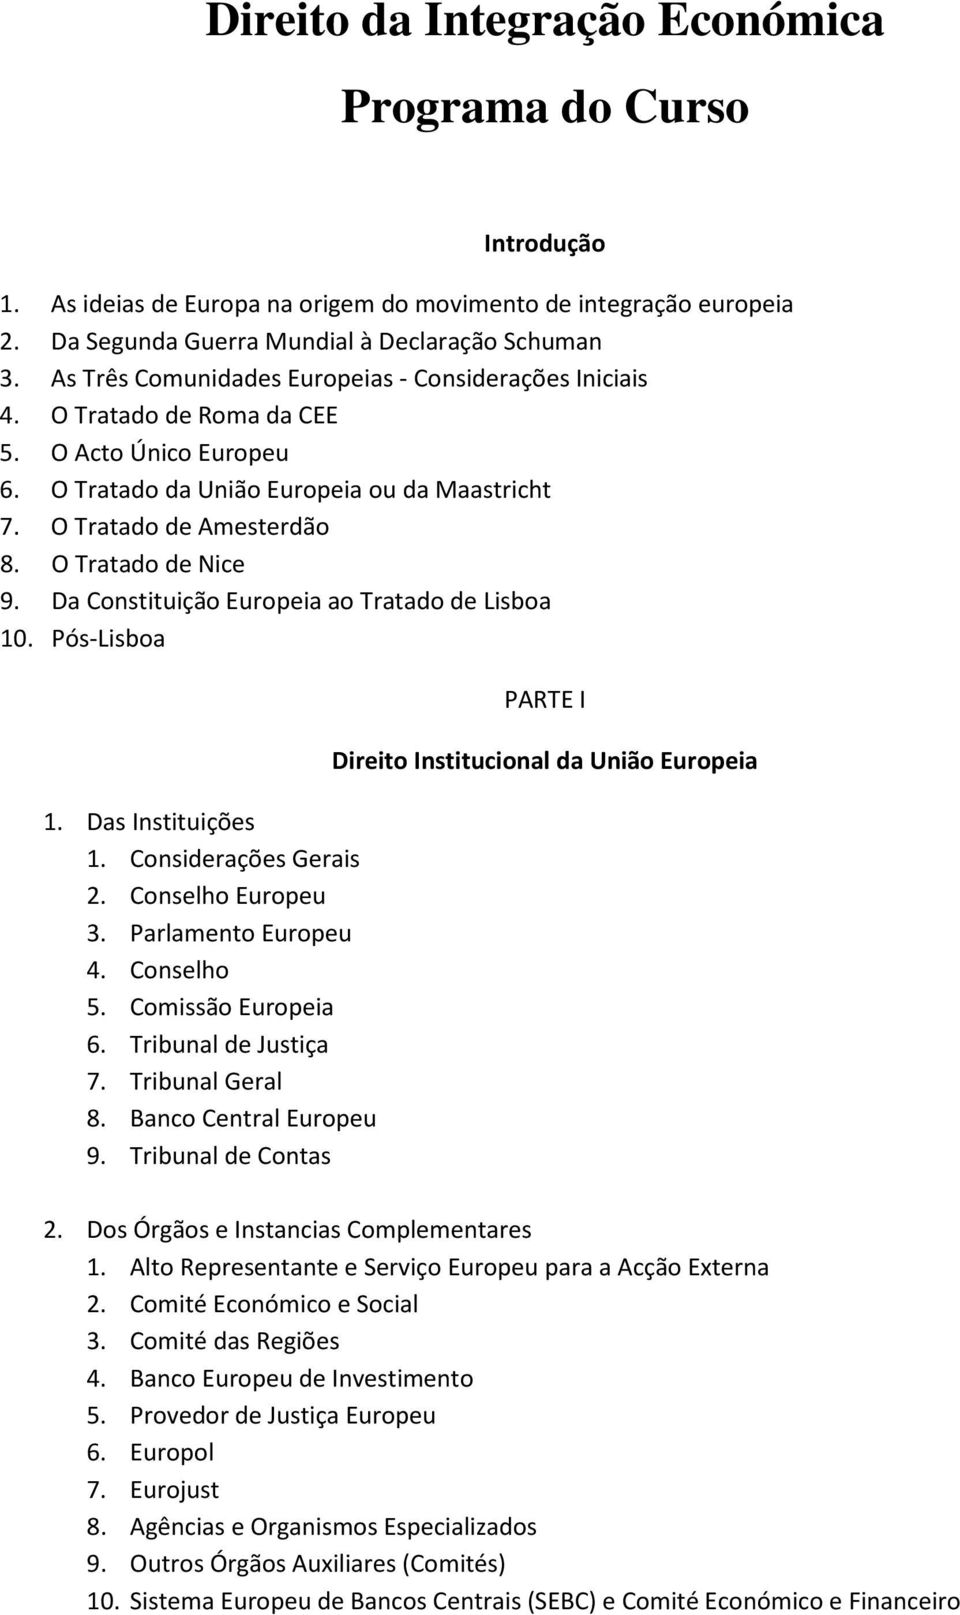 O Tratado de Nice 9. Da Constituição Europeia ao Tratado de Lisboa 10. Pós-Lisboa 1. Das Instituições 2. Conselho Europeu 3. Parlamento Europeu 4. Conselho 5. Comissão Europeia 6.